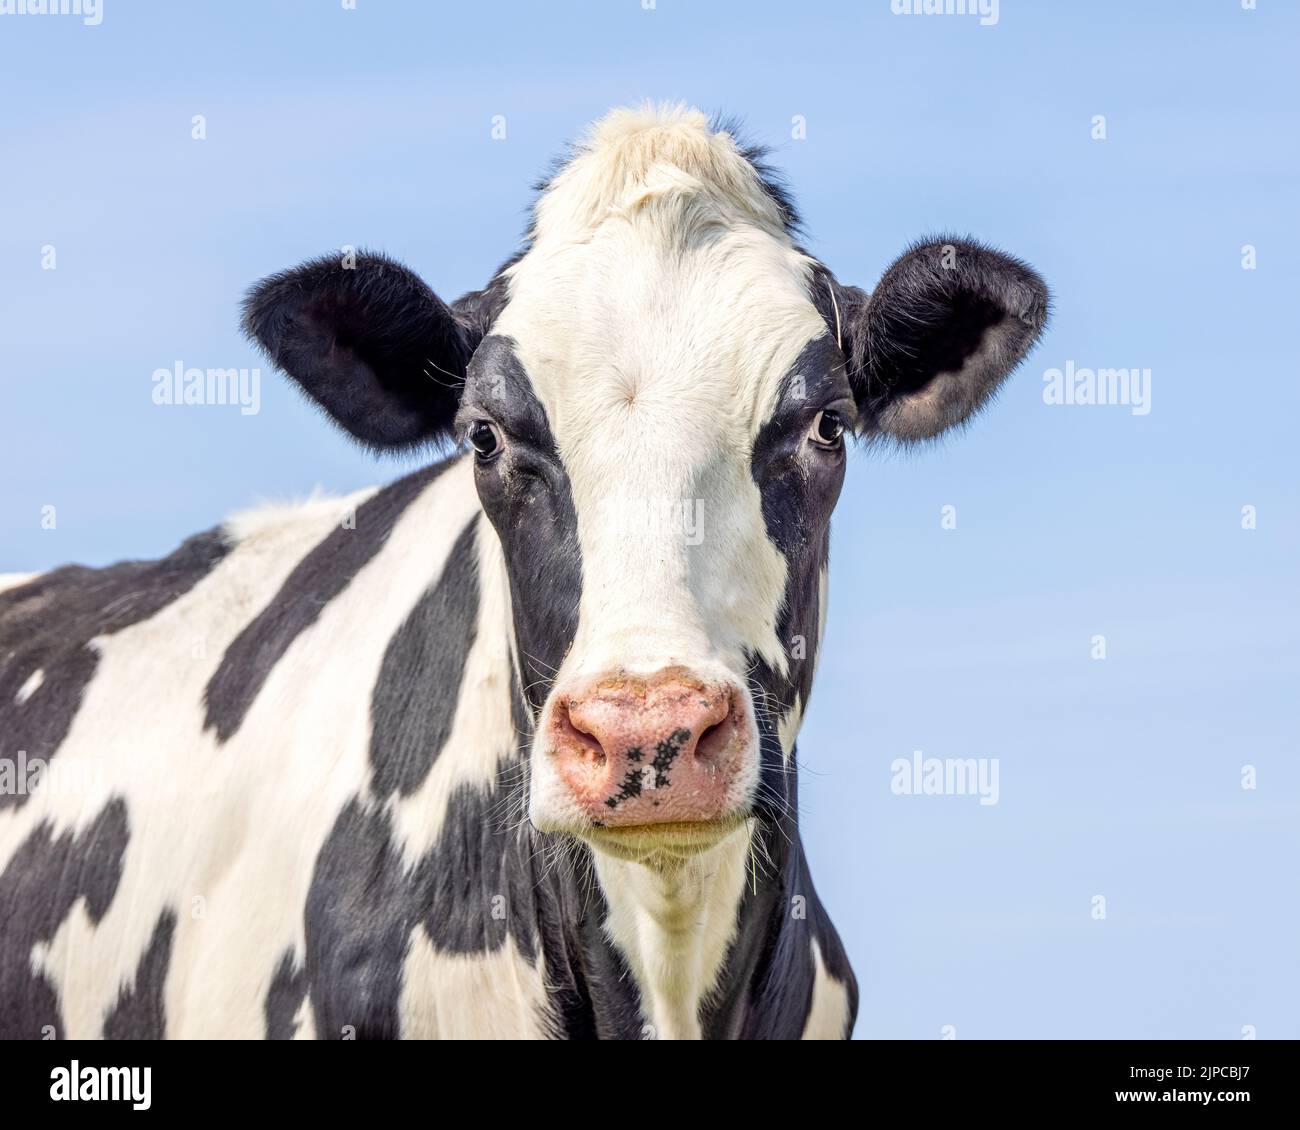 Carino mucca, viso skinny, nero e bianco amichevole innocente look, naso rosa, scatto medio di una testa in bianco e nero di fronte a un cielo azzurro pallido. Foto Stock